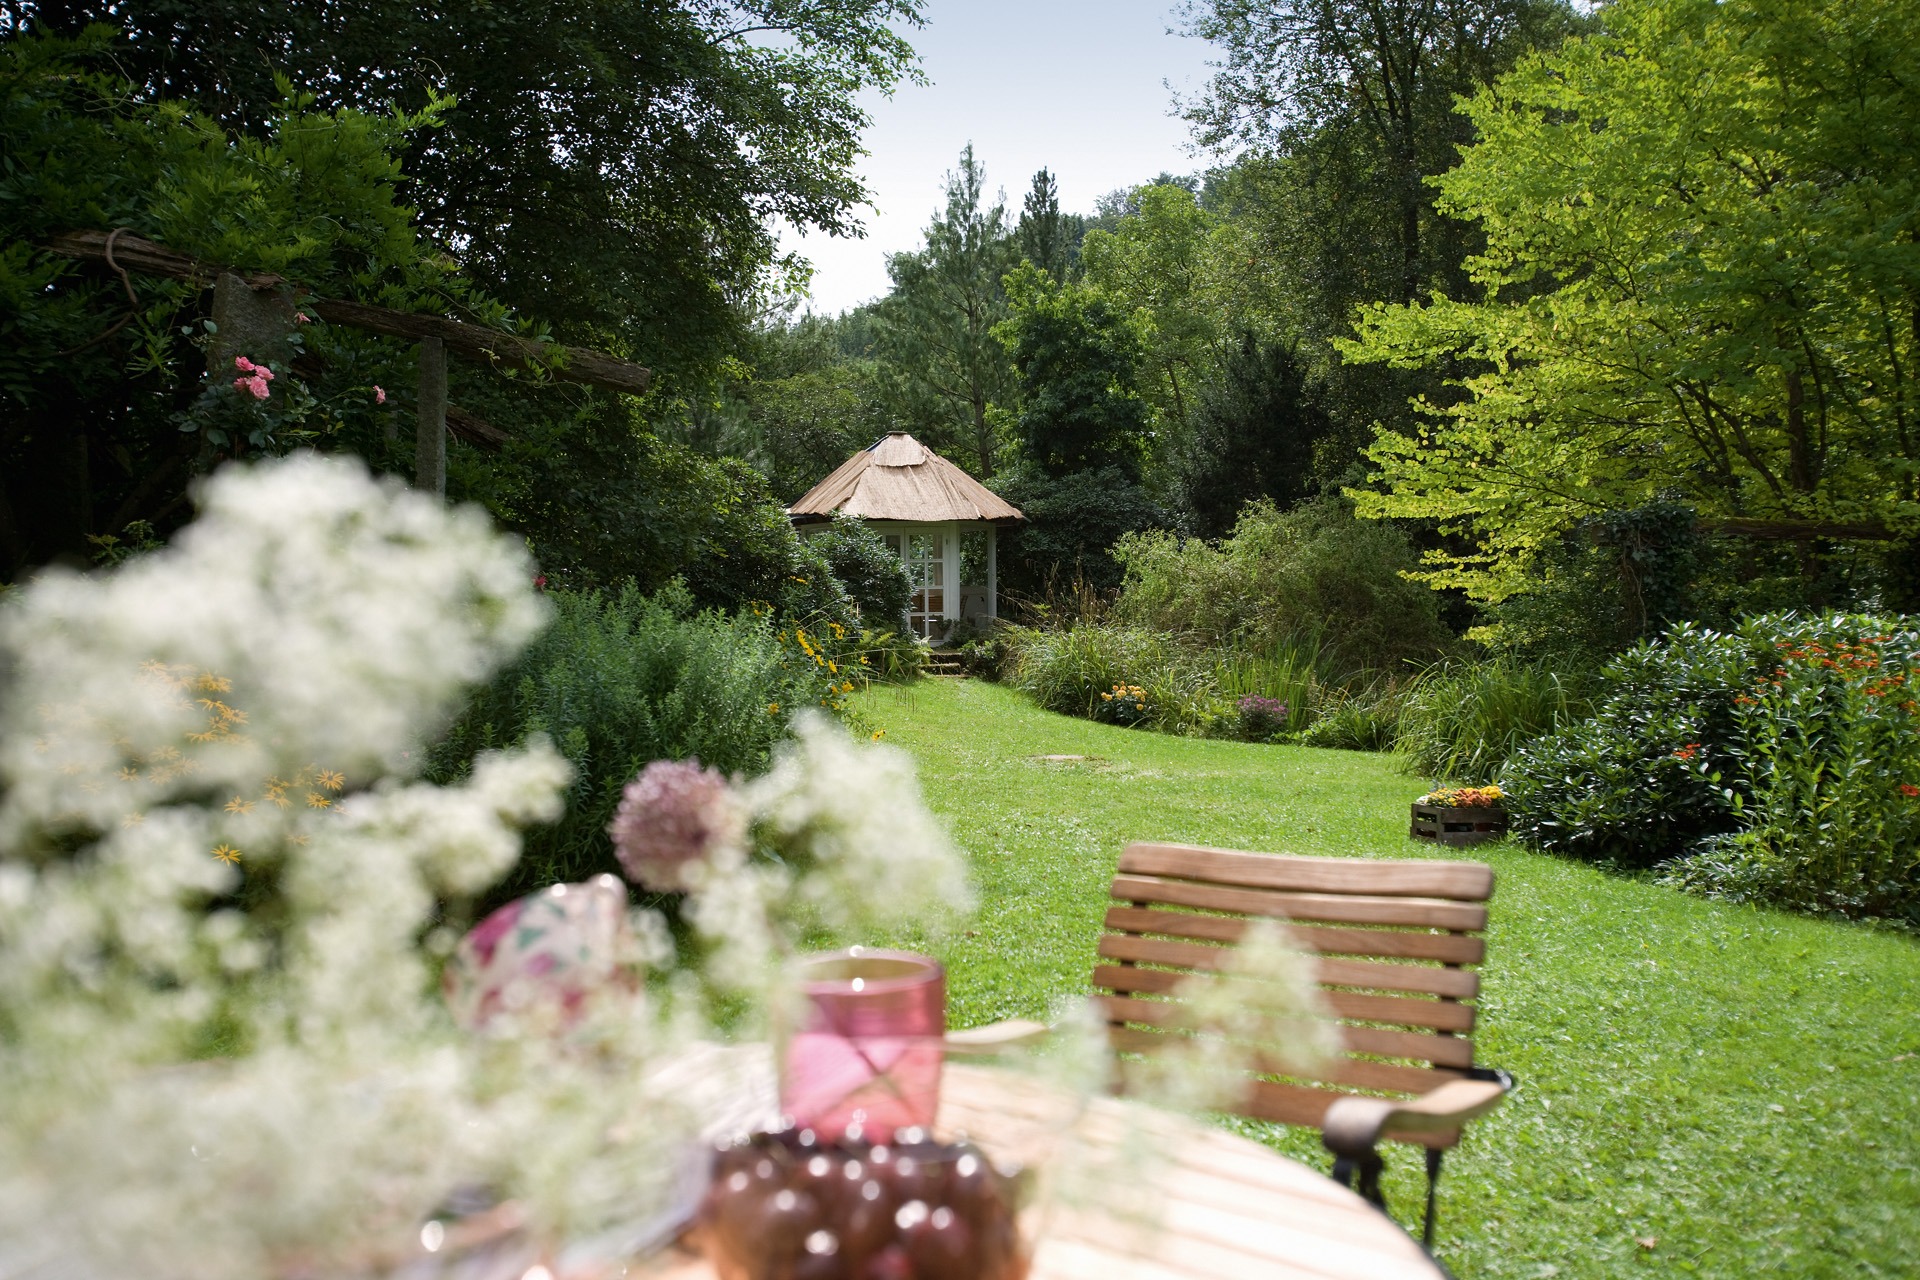 Gartenpflege in grünem Garten mit Stuhl im Vordergrund und Schuppen im Hintergrund